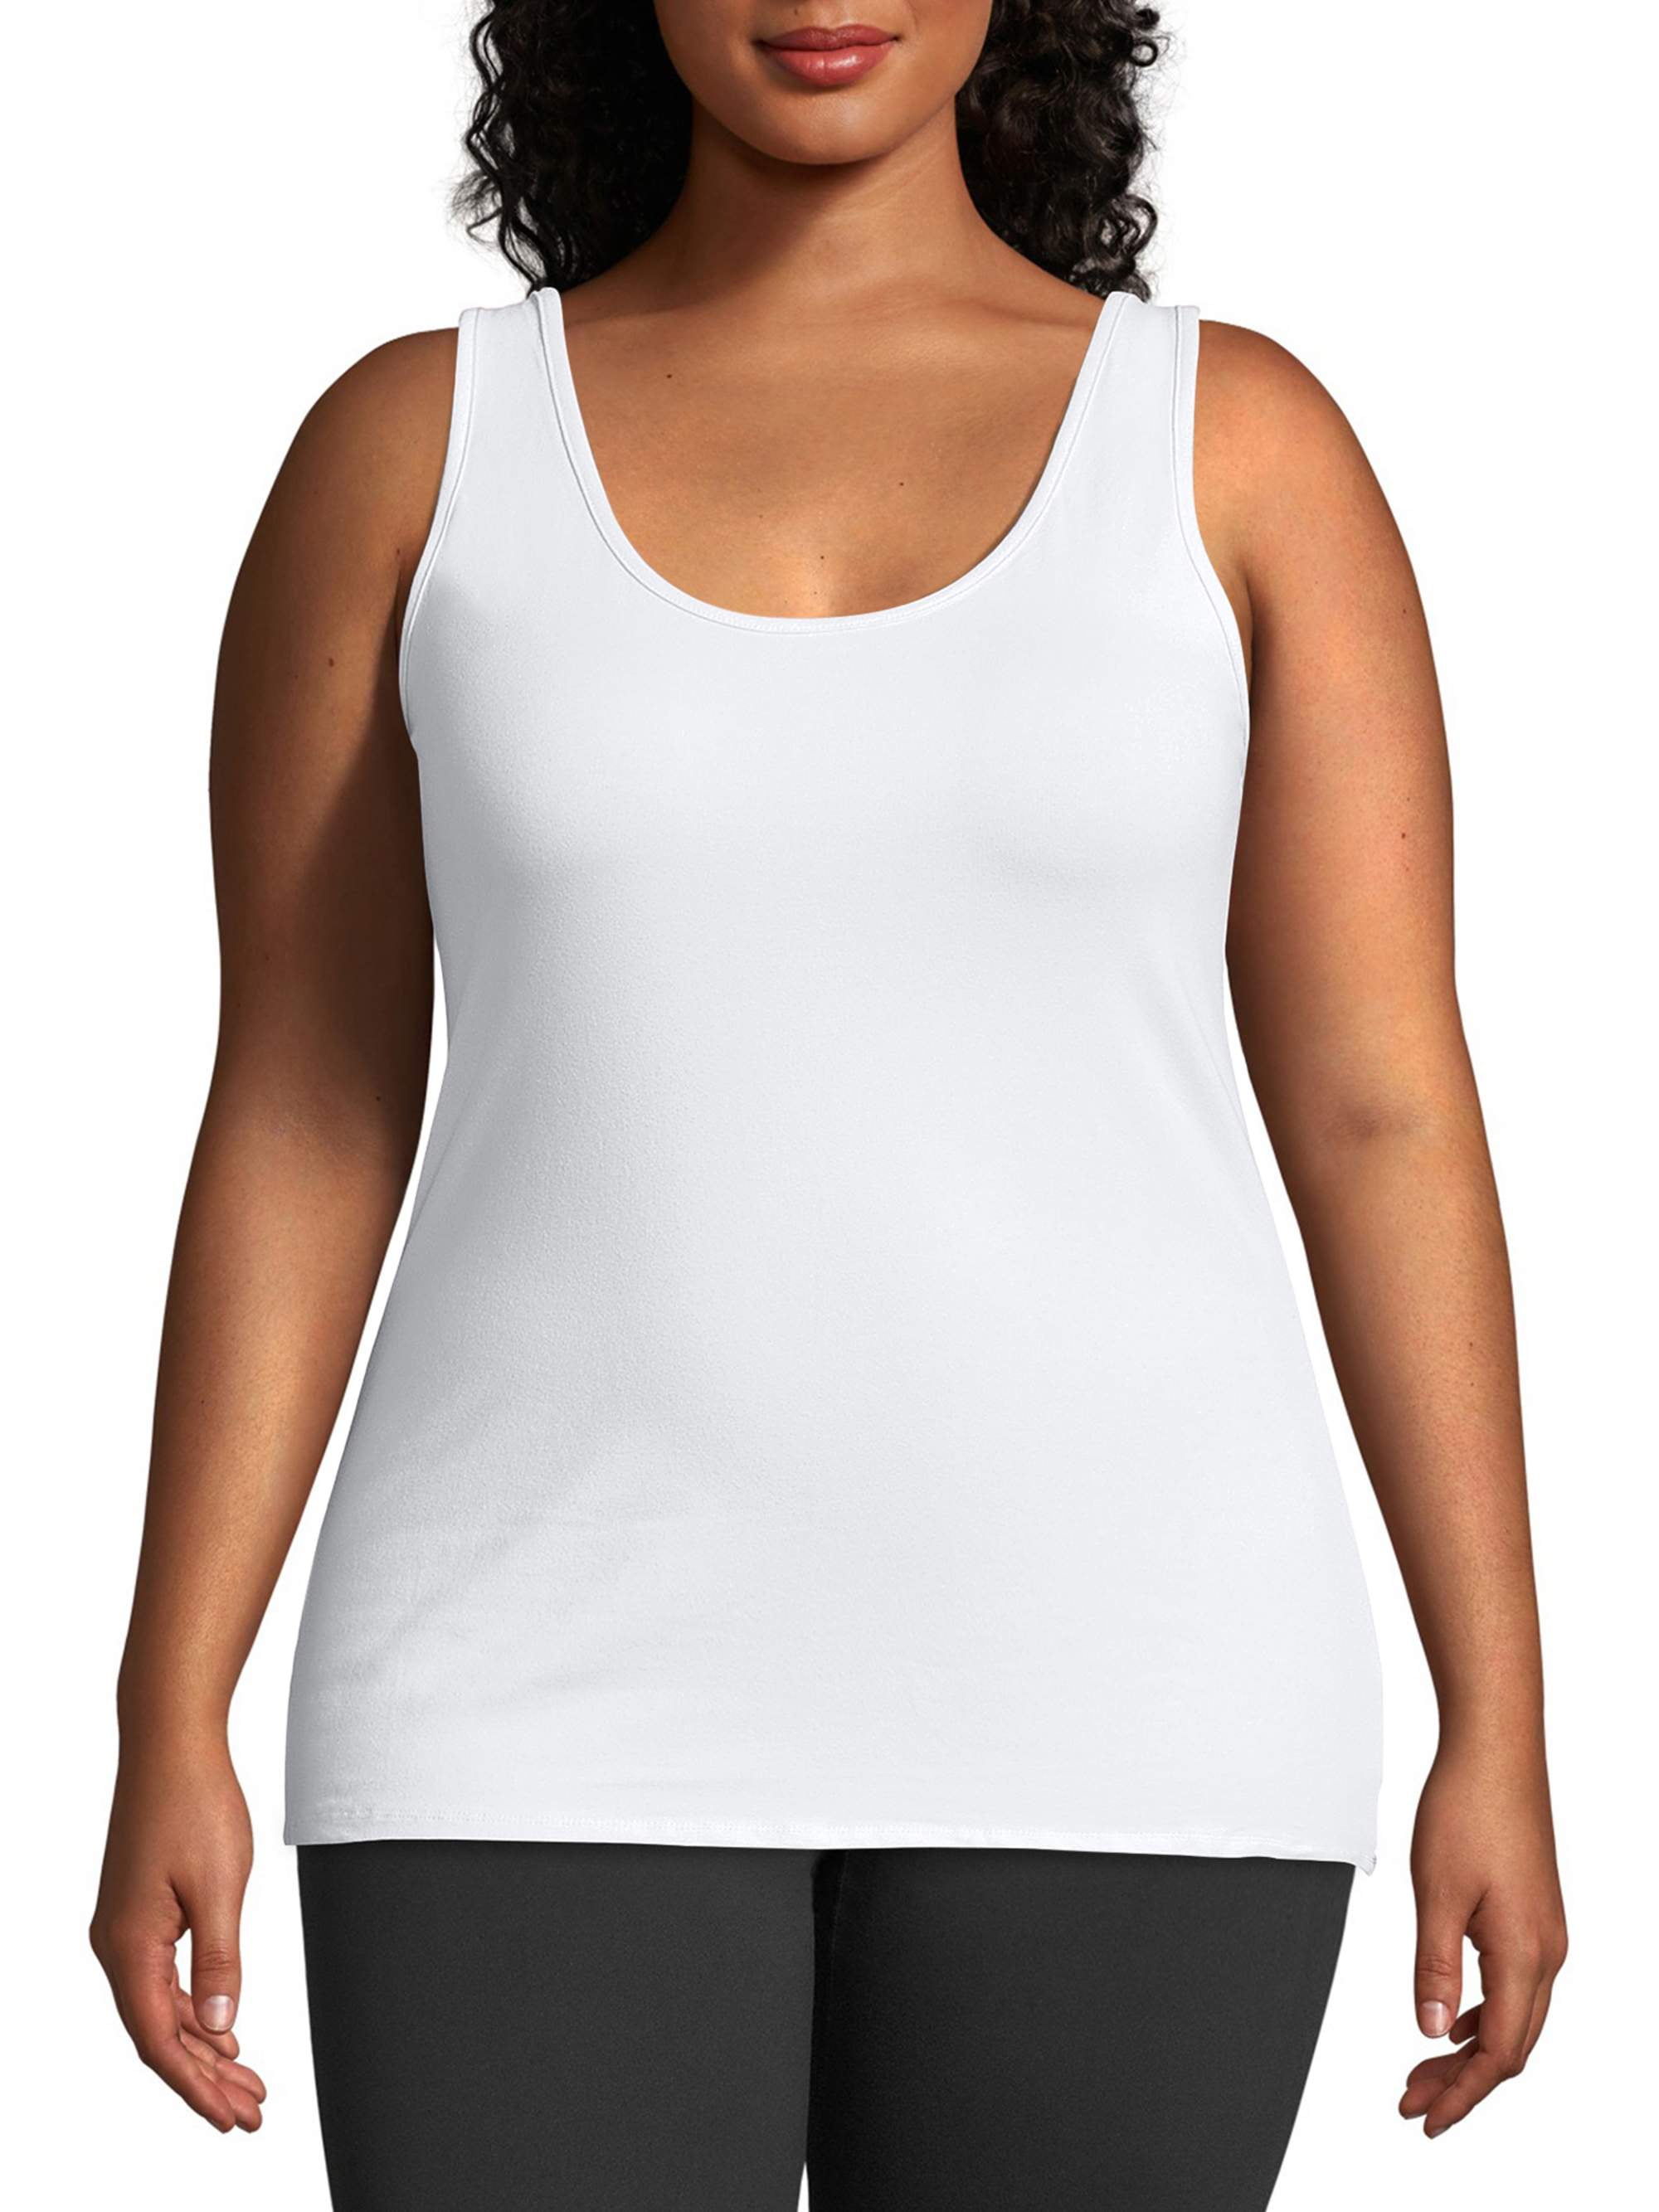 My Size Plus-Size Women's Stretch Camisole - Walmart.com